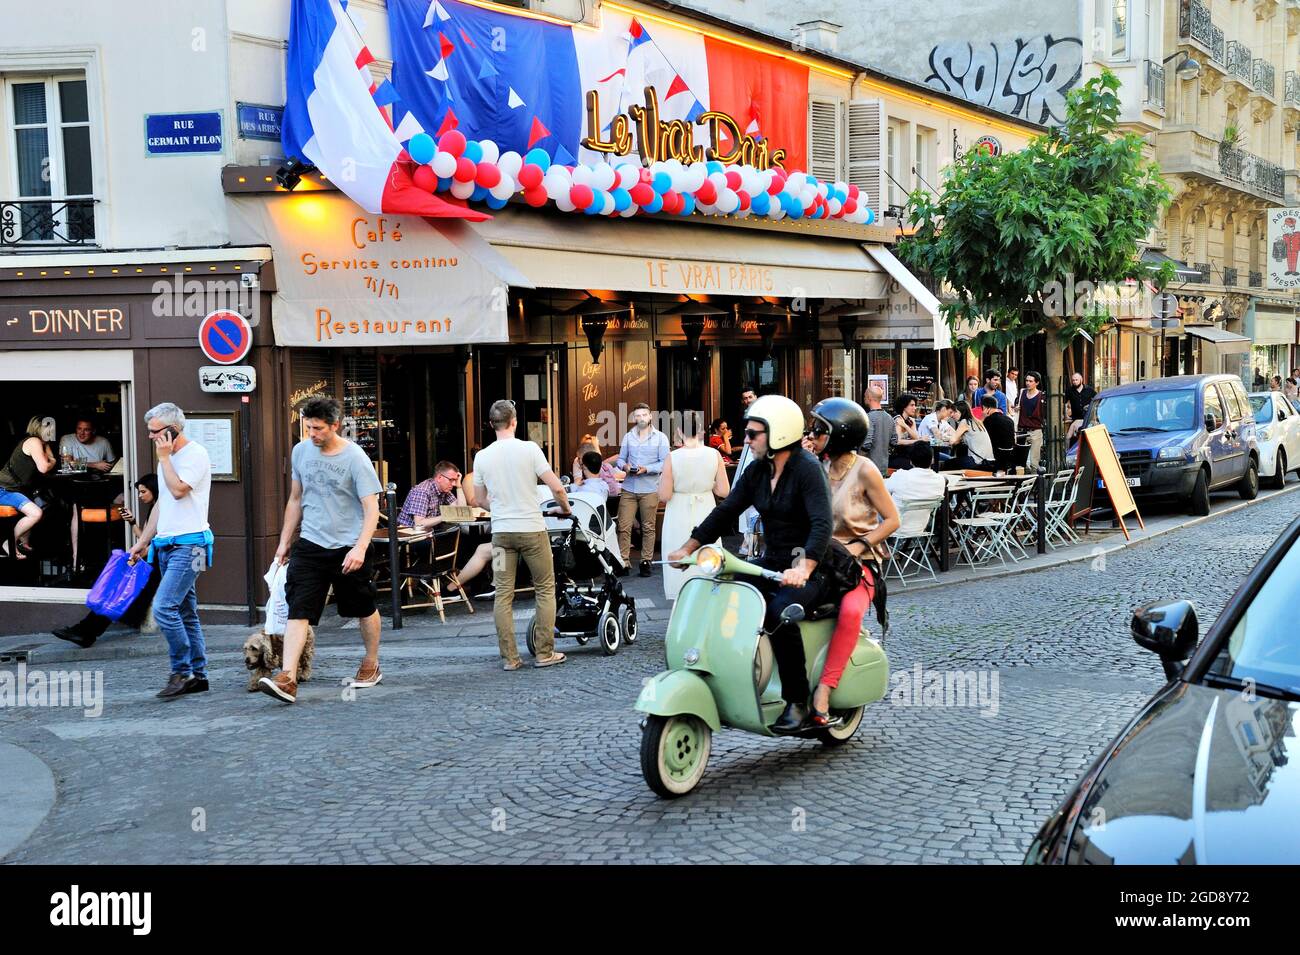 FRANCE, PARIS (75) 18TH ARRONDISSEMENT, MONTMARTRE AND ABBESSES DISTRICT, LE VRAI PARIS BAR AND RESTAURANT Stock Photo